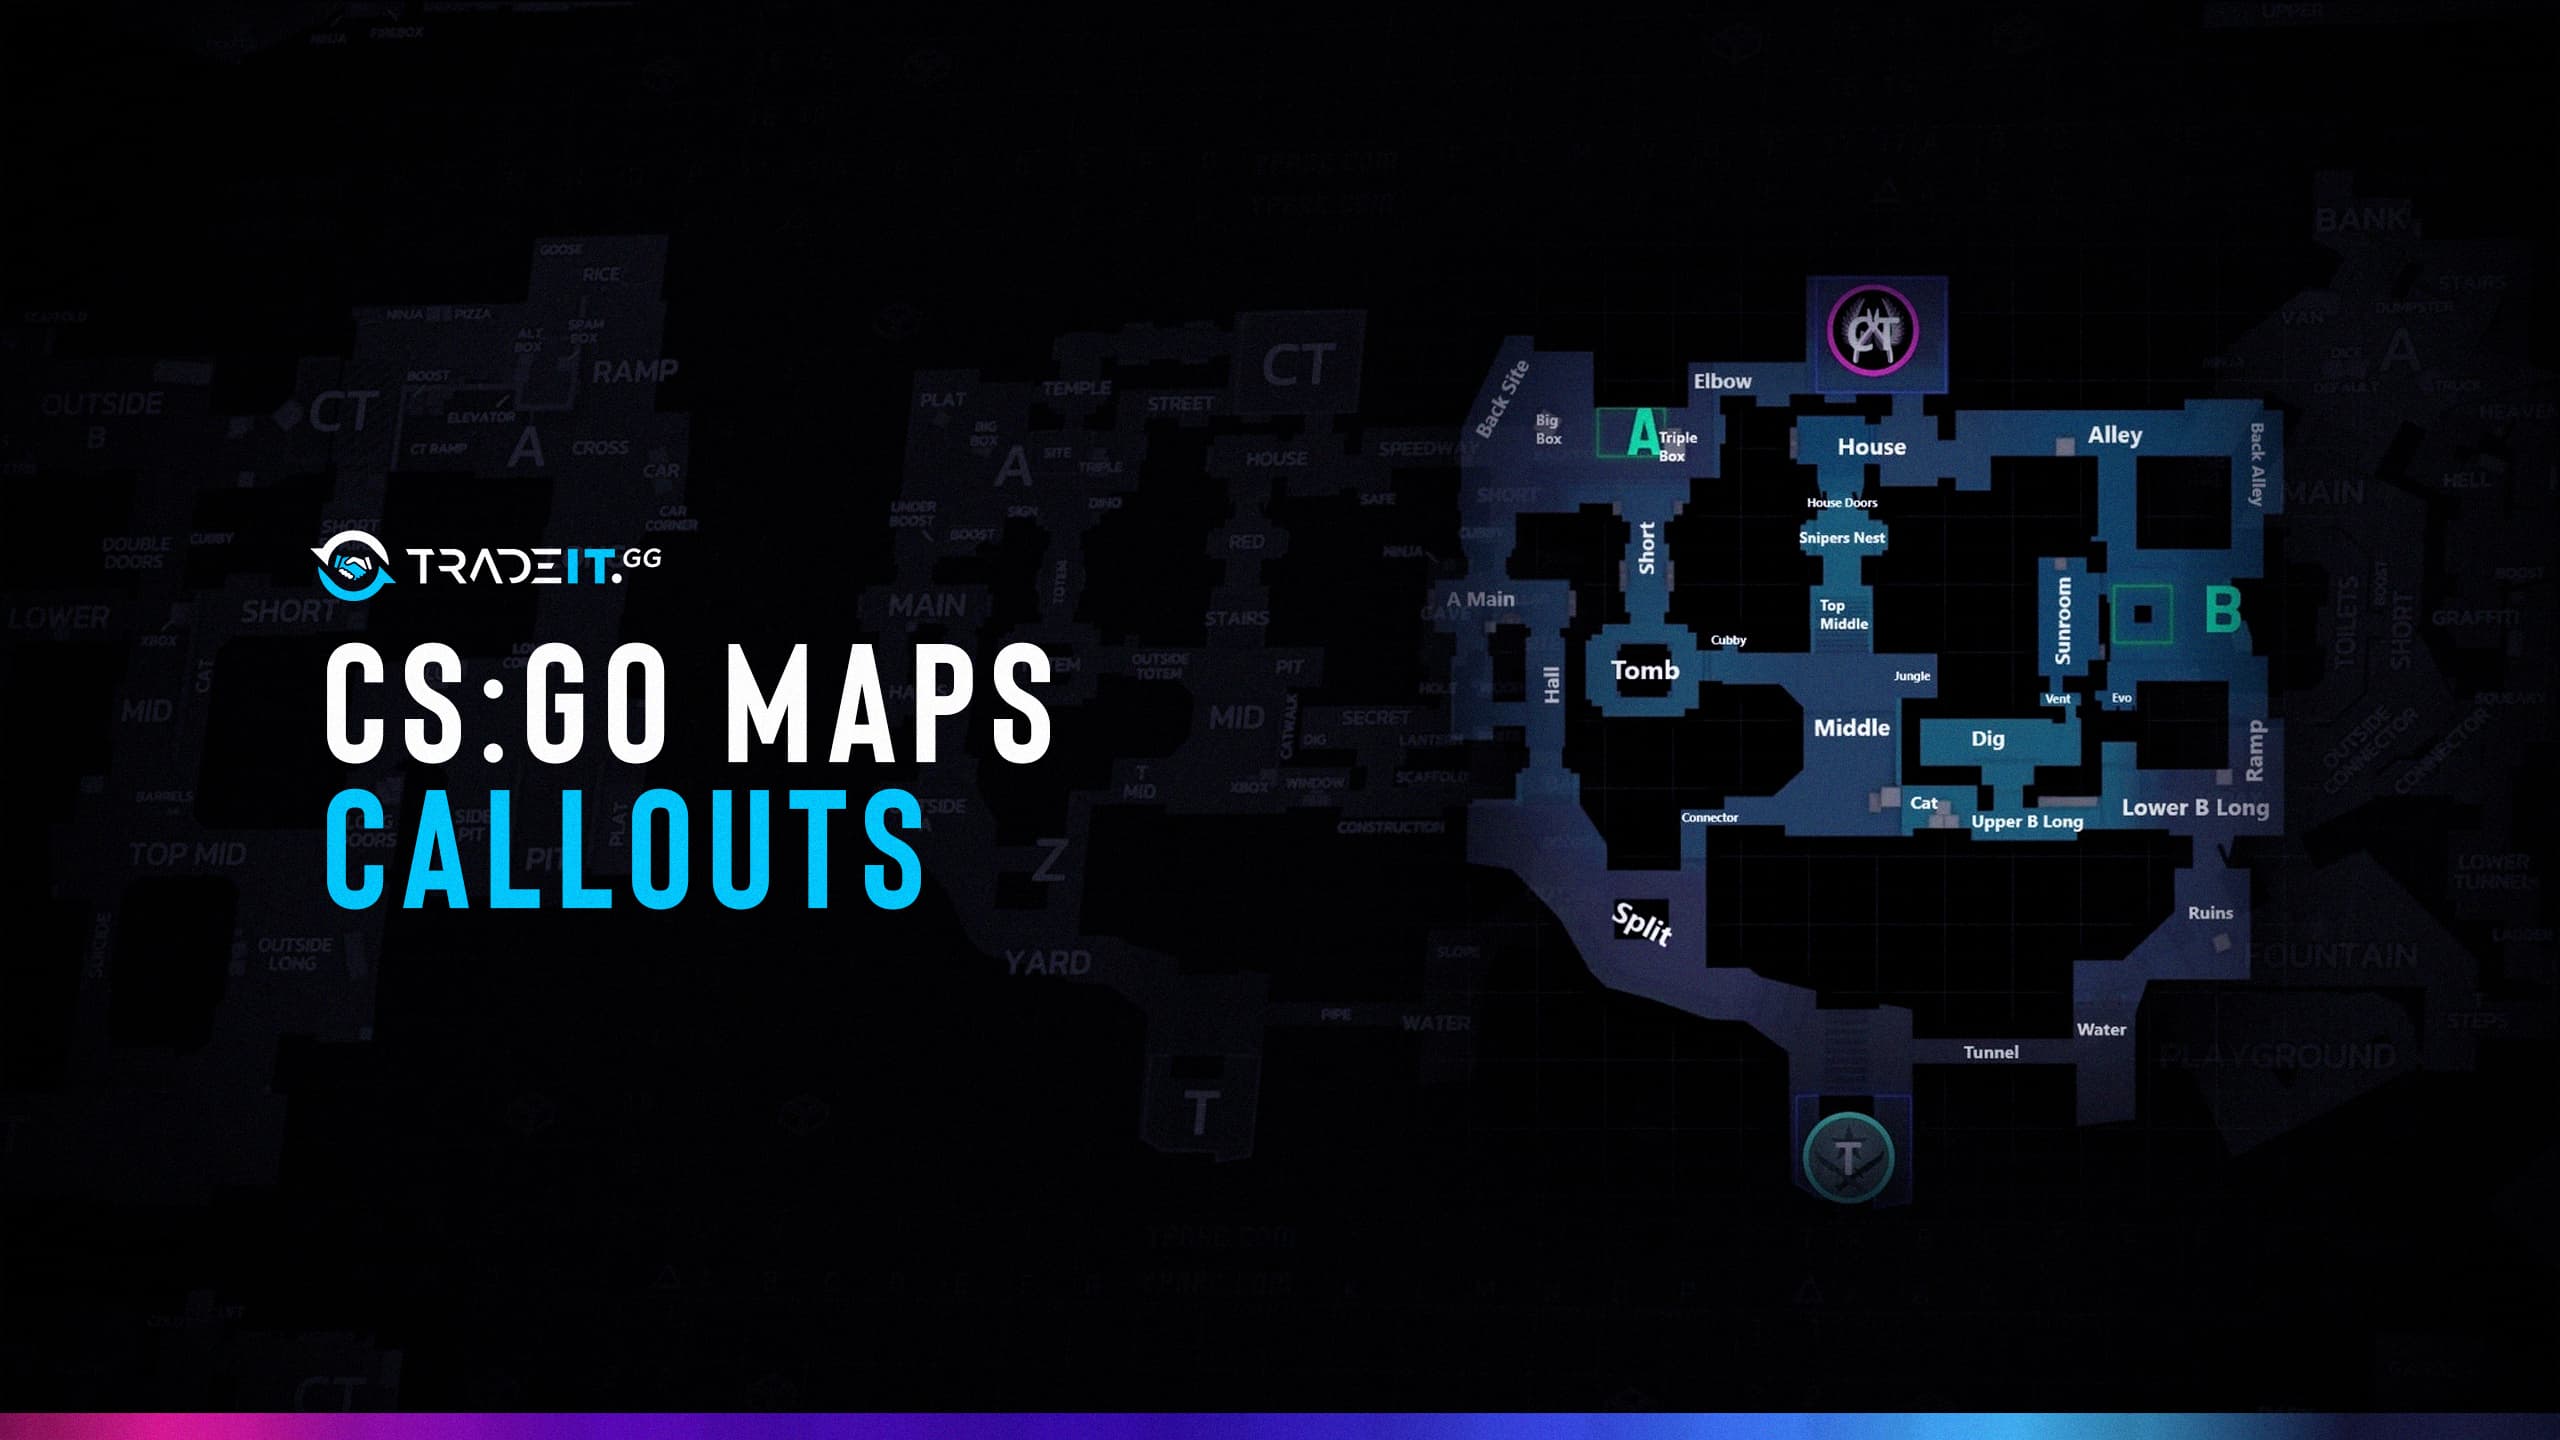 CSGO Maps Callouts